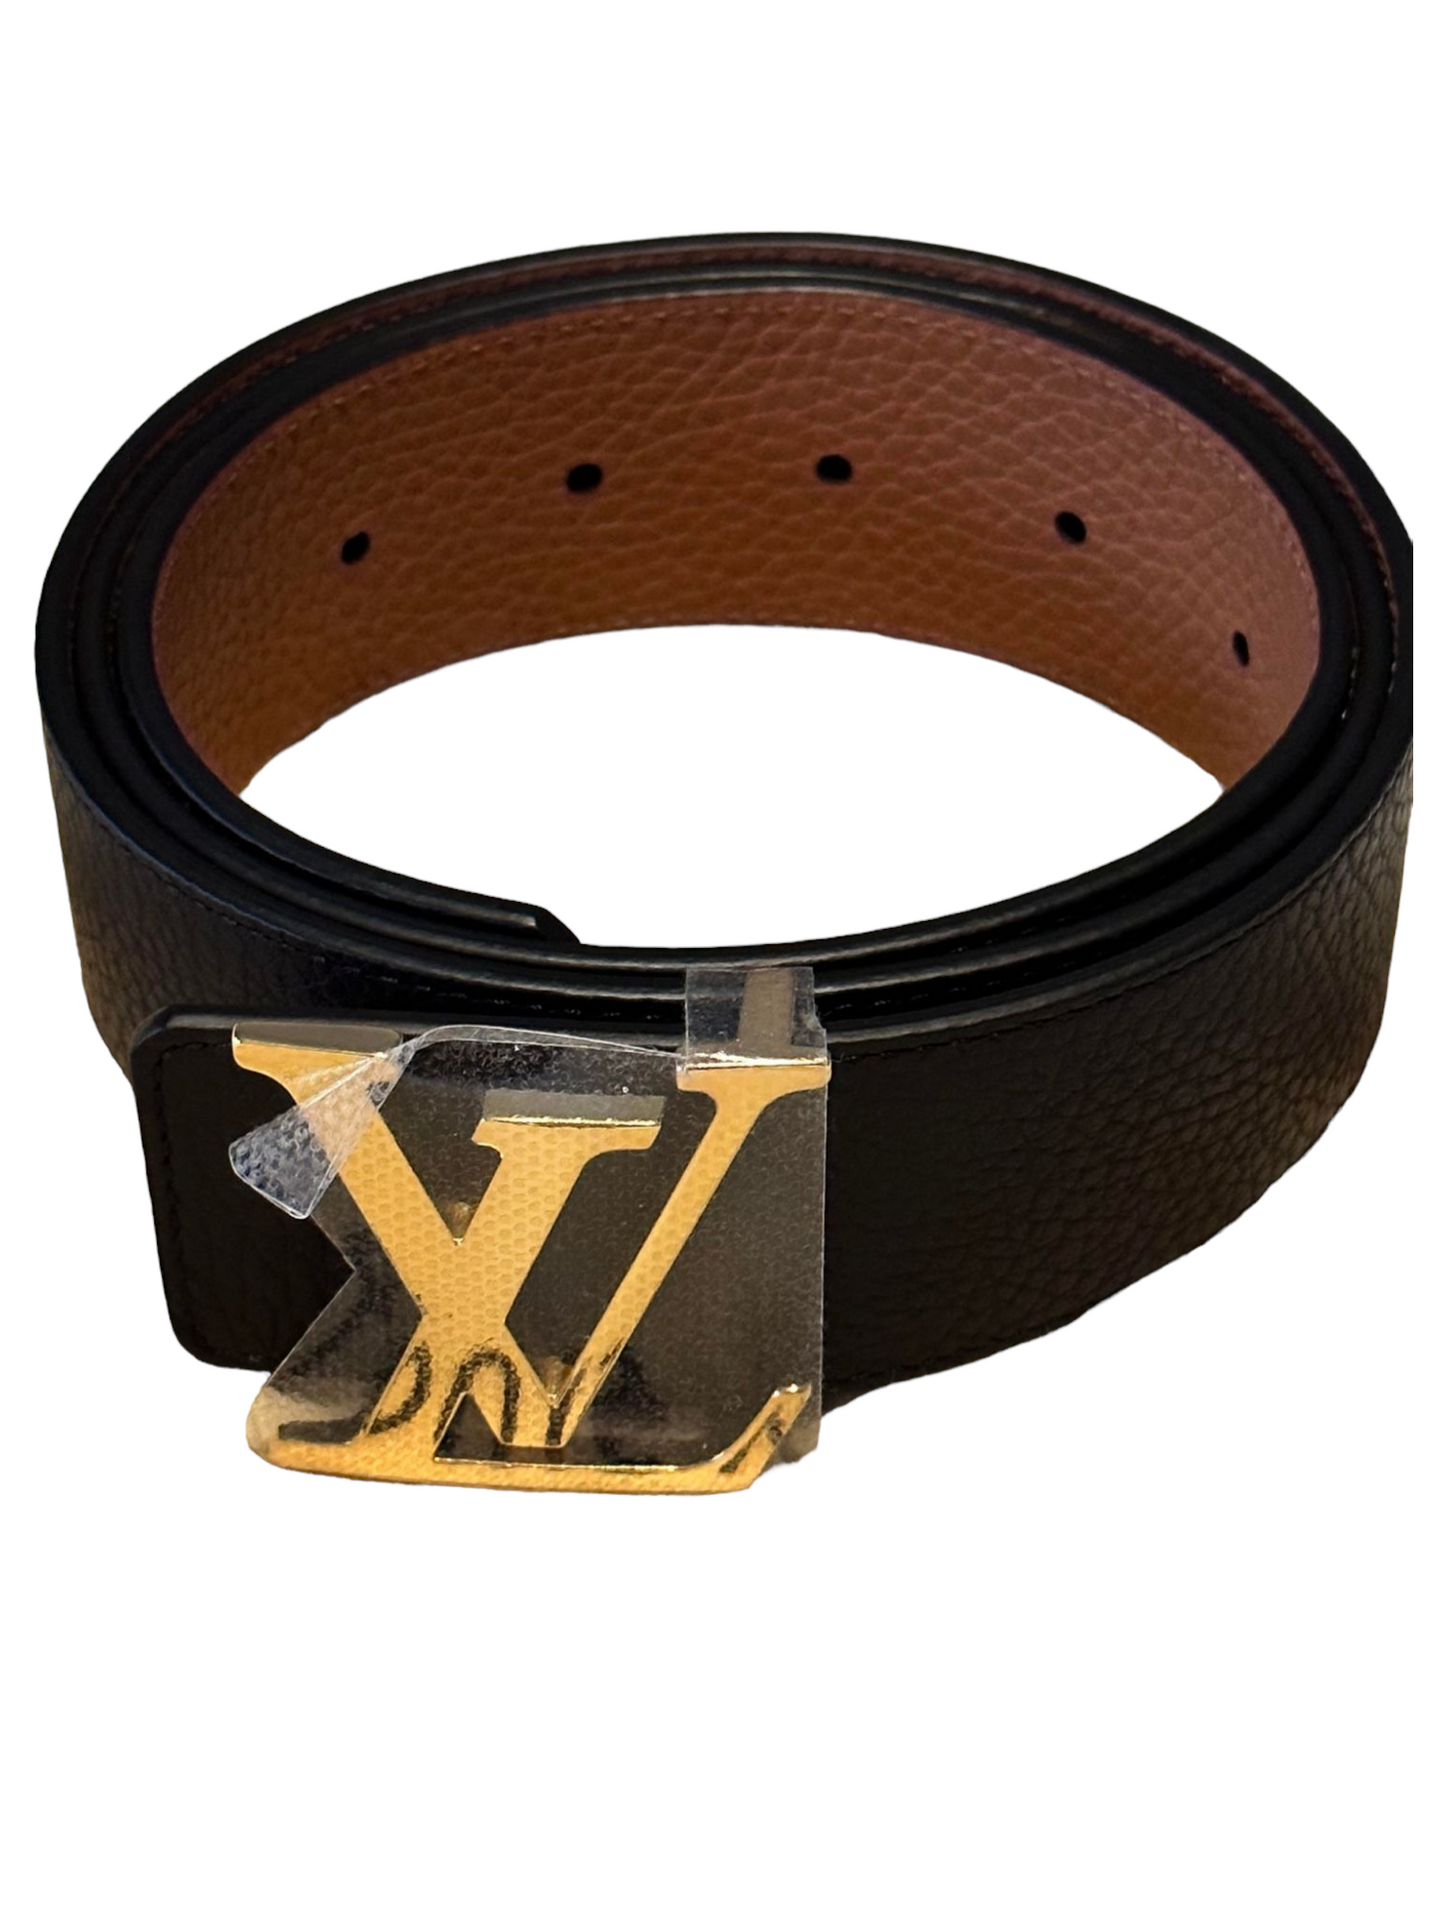 Louis Vuitton Black Leather Belt, Gold Buckle Size 95